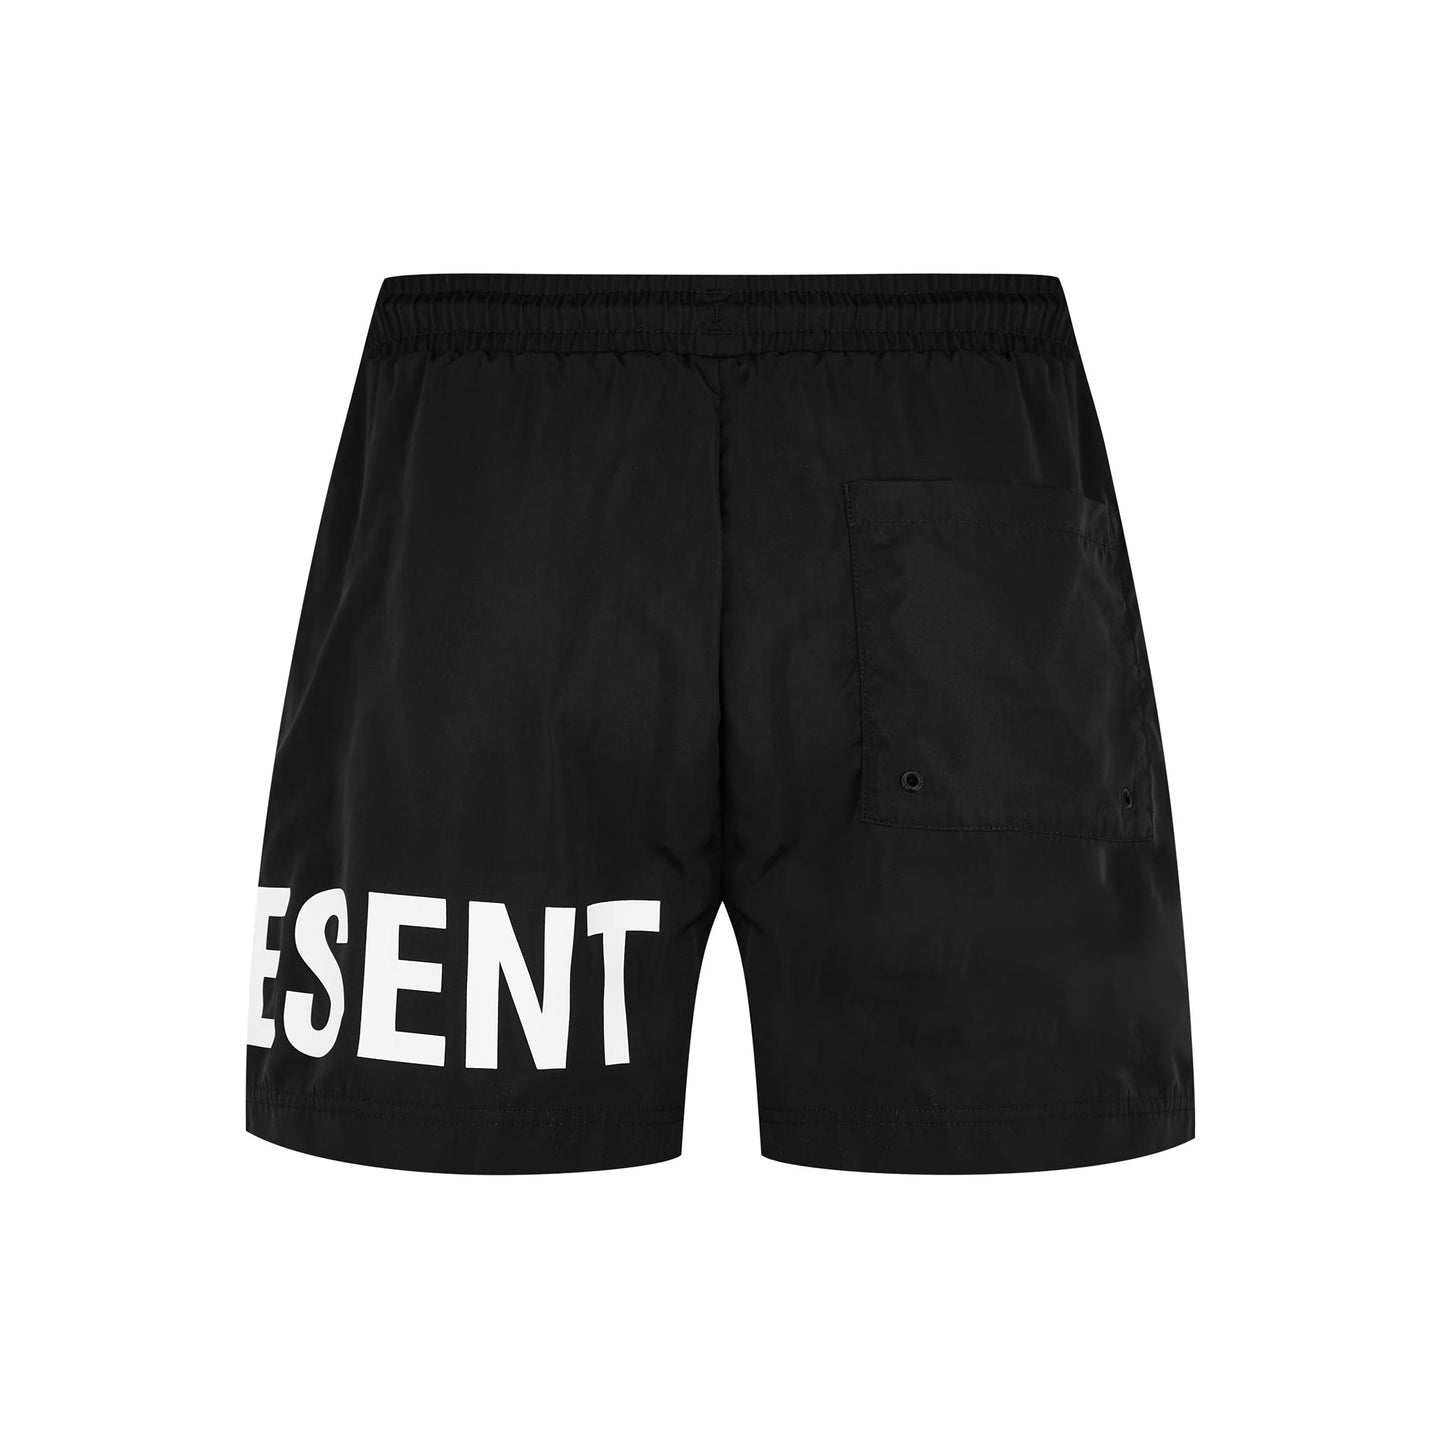 Represent Swim Short - 01 Black - Escape Menswear